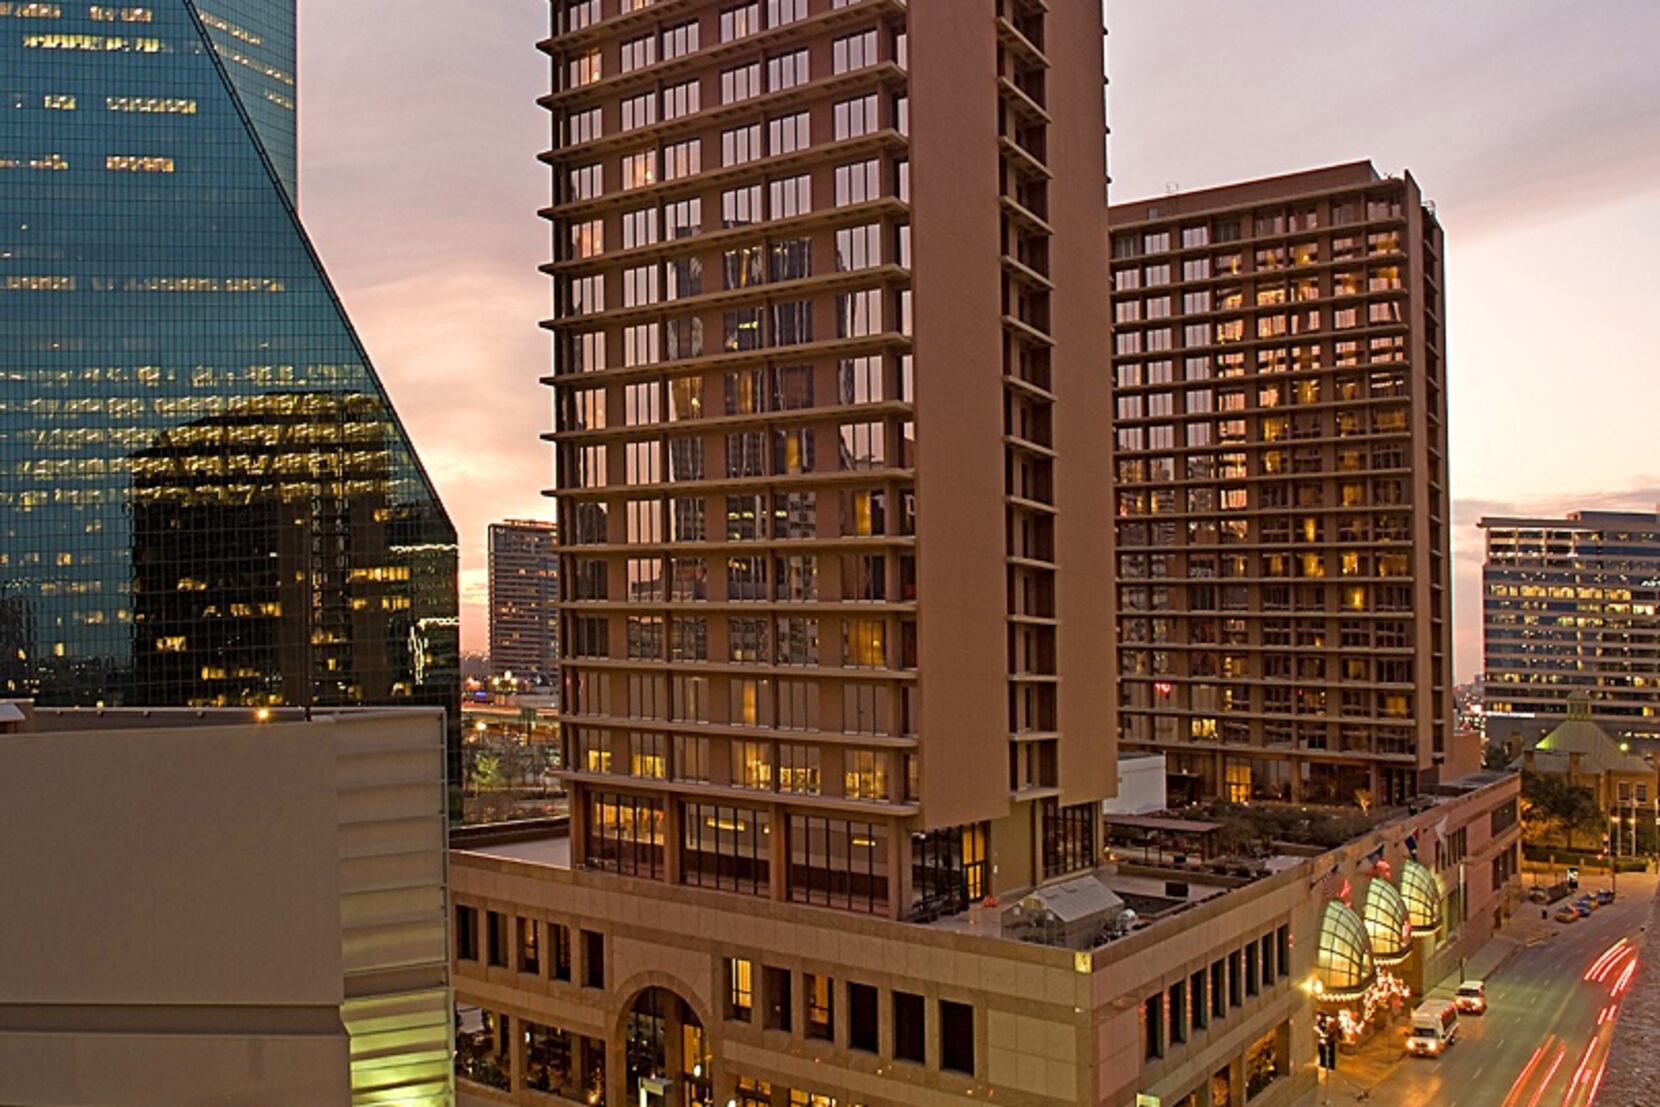 Fairmont Dallas - Luxury Hotel in Dallas (United States)